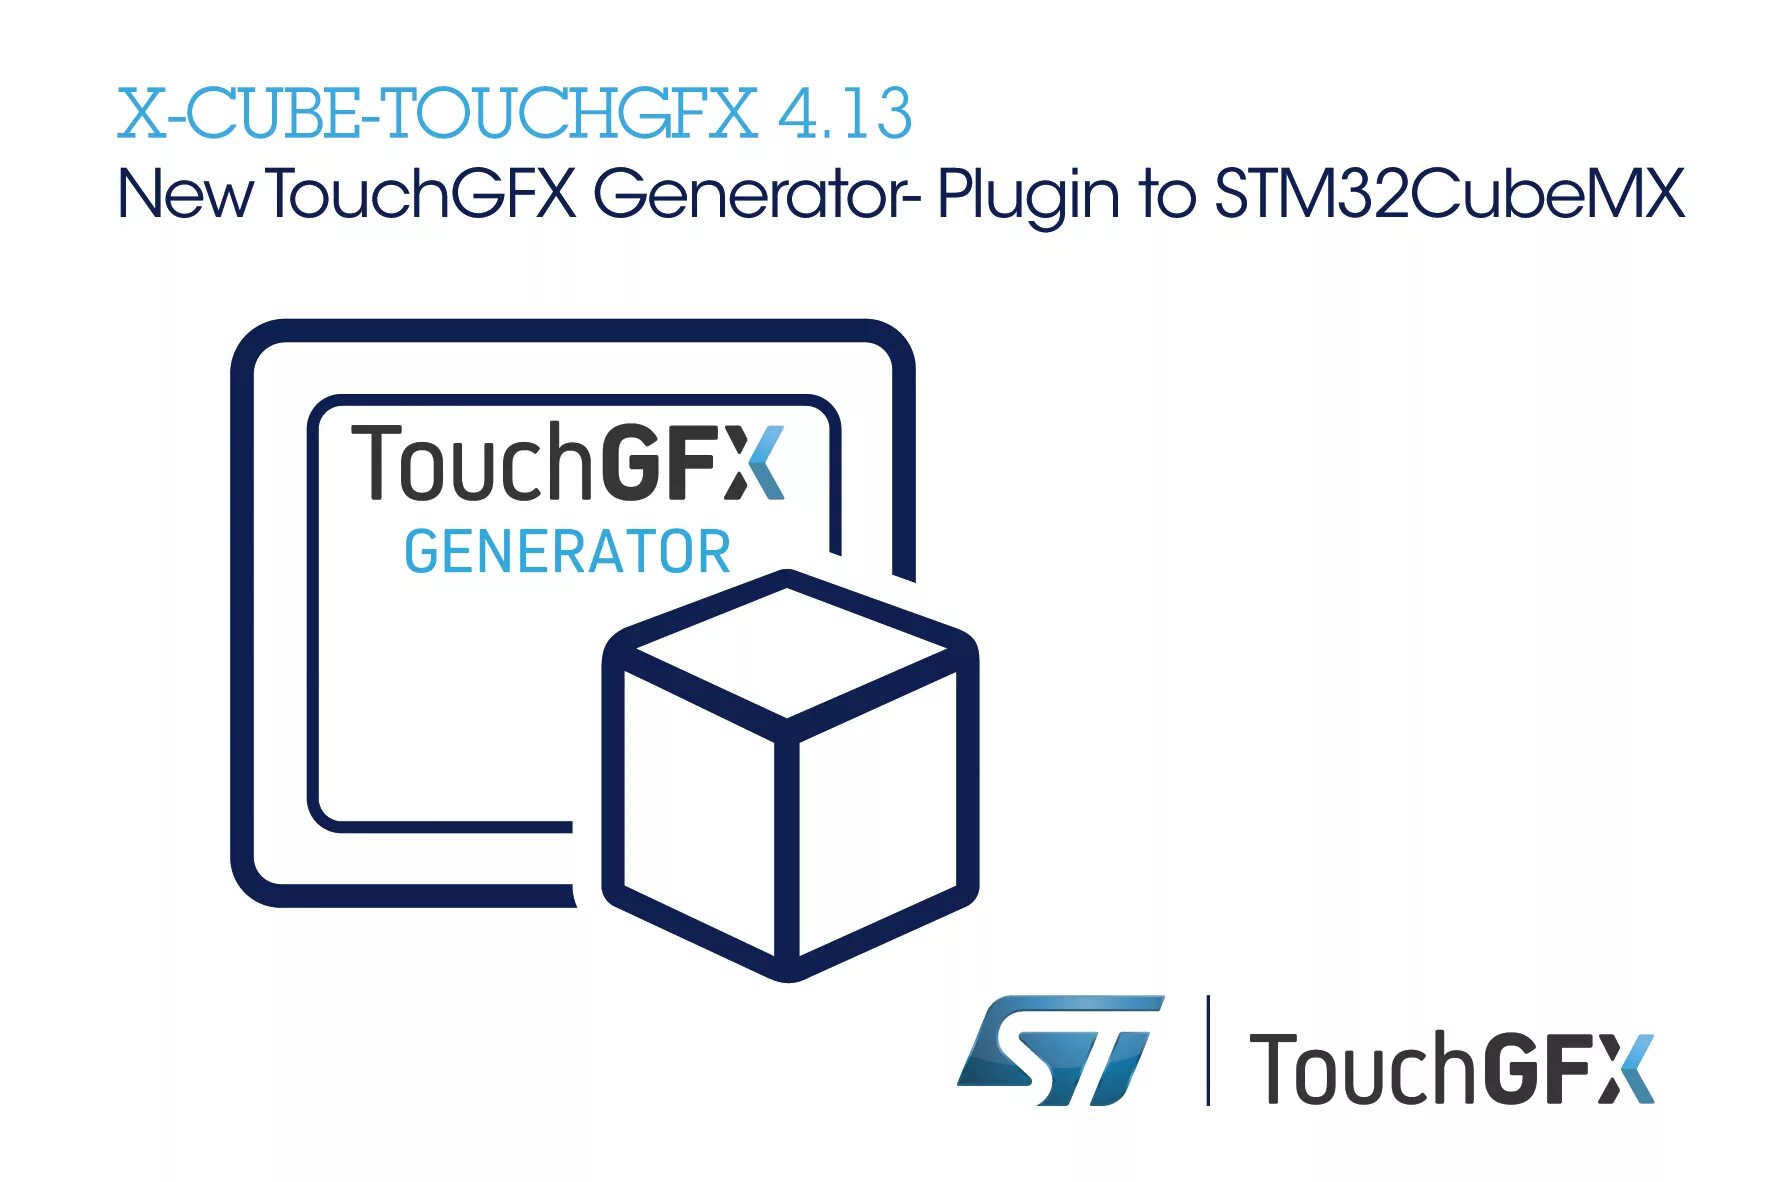 Stm cube. Stm32 Cube. TOUCHGFX stm32. STM 32 kubeid. Stm32cubemx icon.